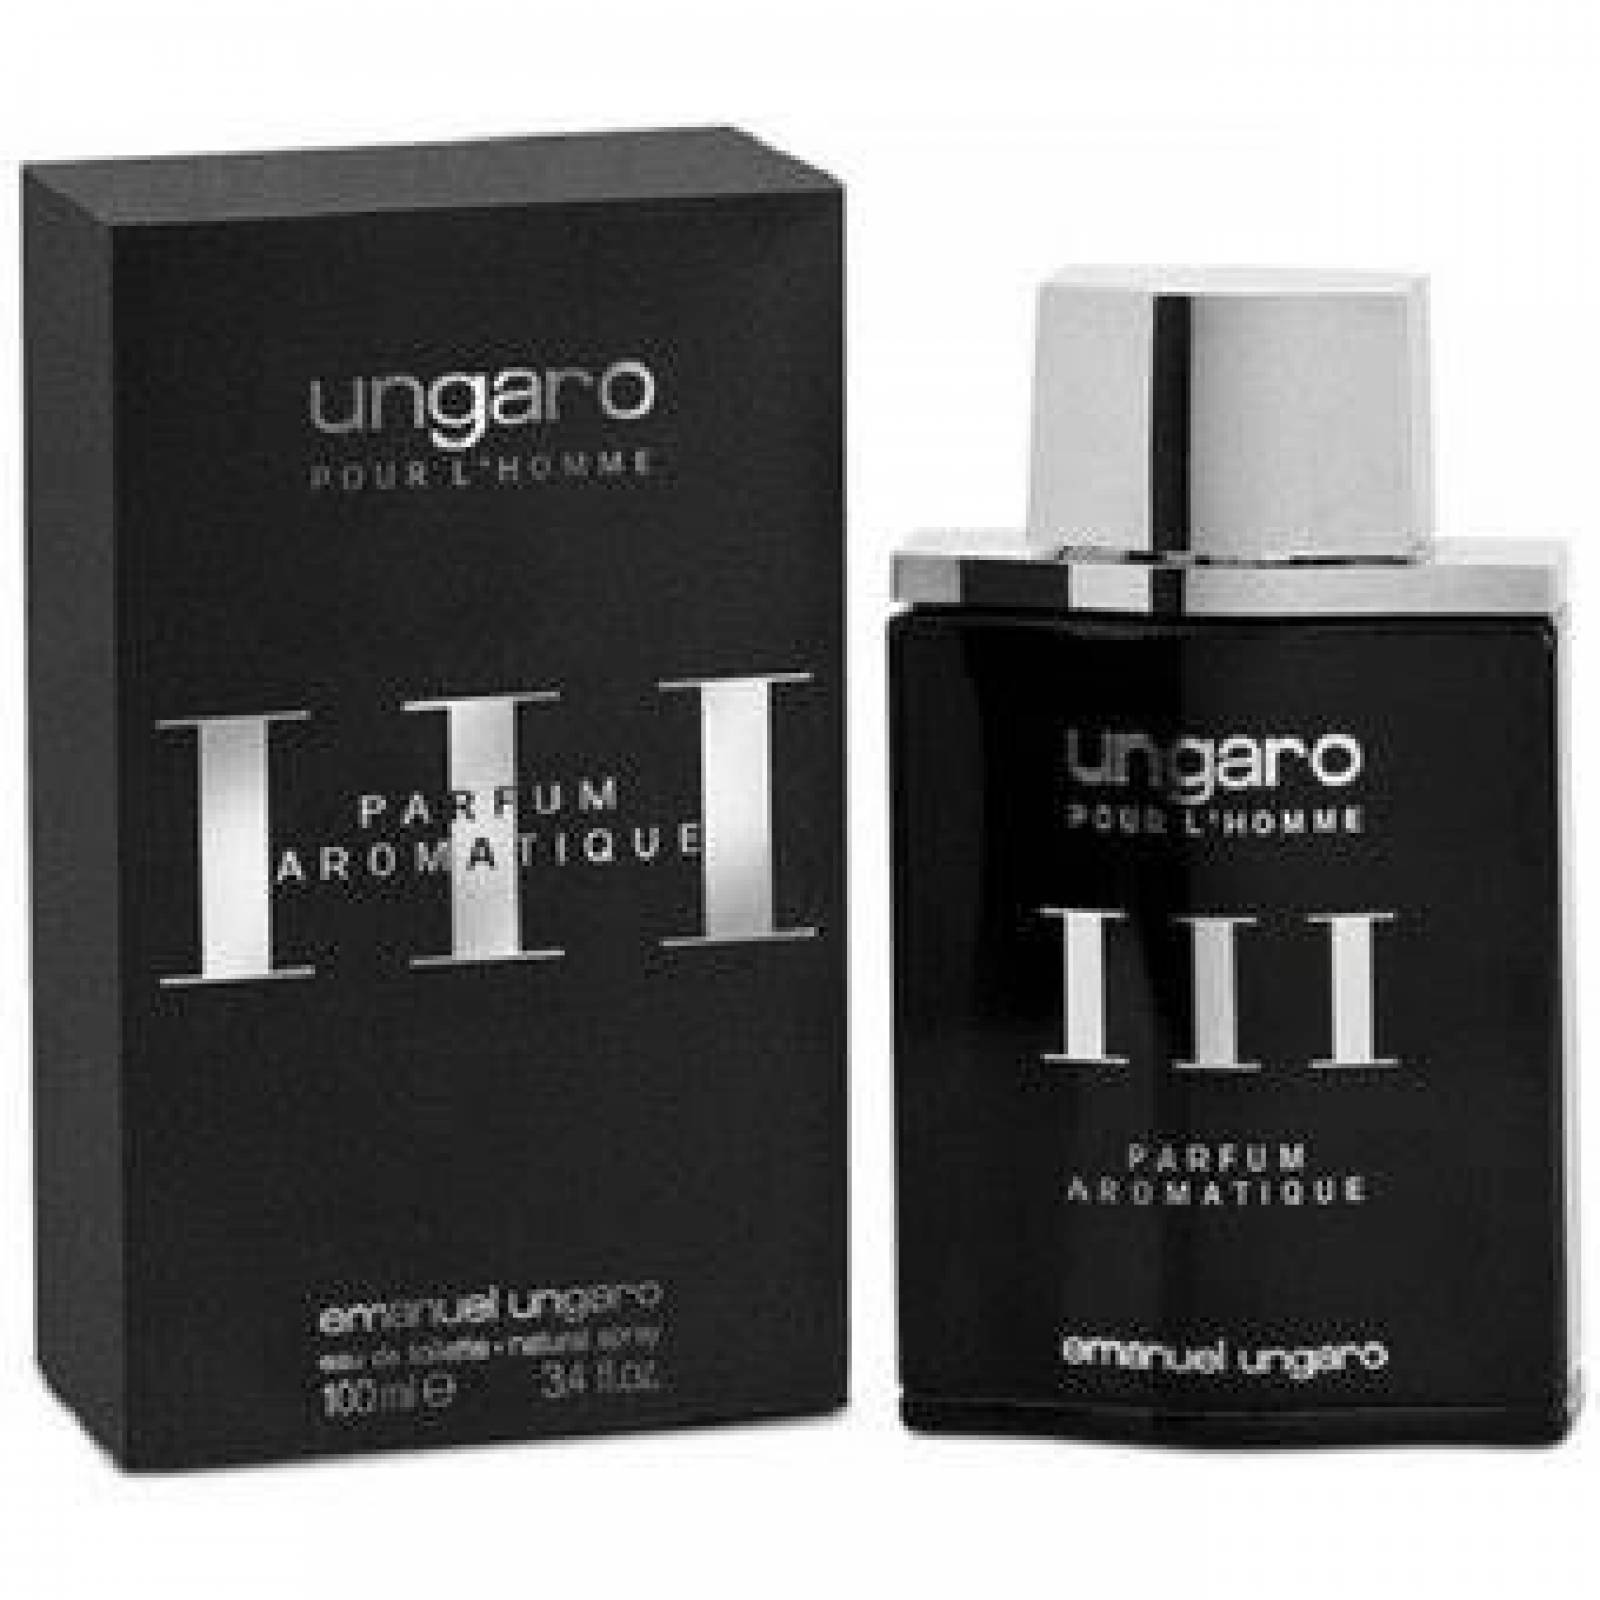 Ungaro III Parfum Aromatic de Emanuel Ungaro Caballero de 100 ml